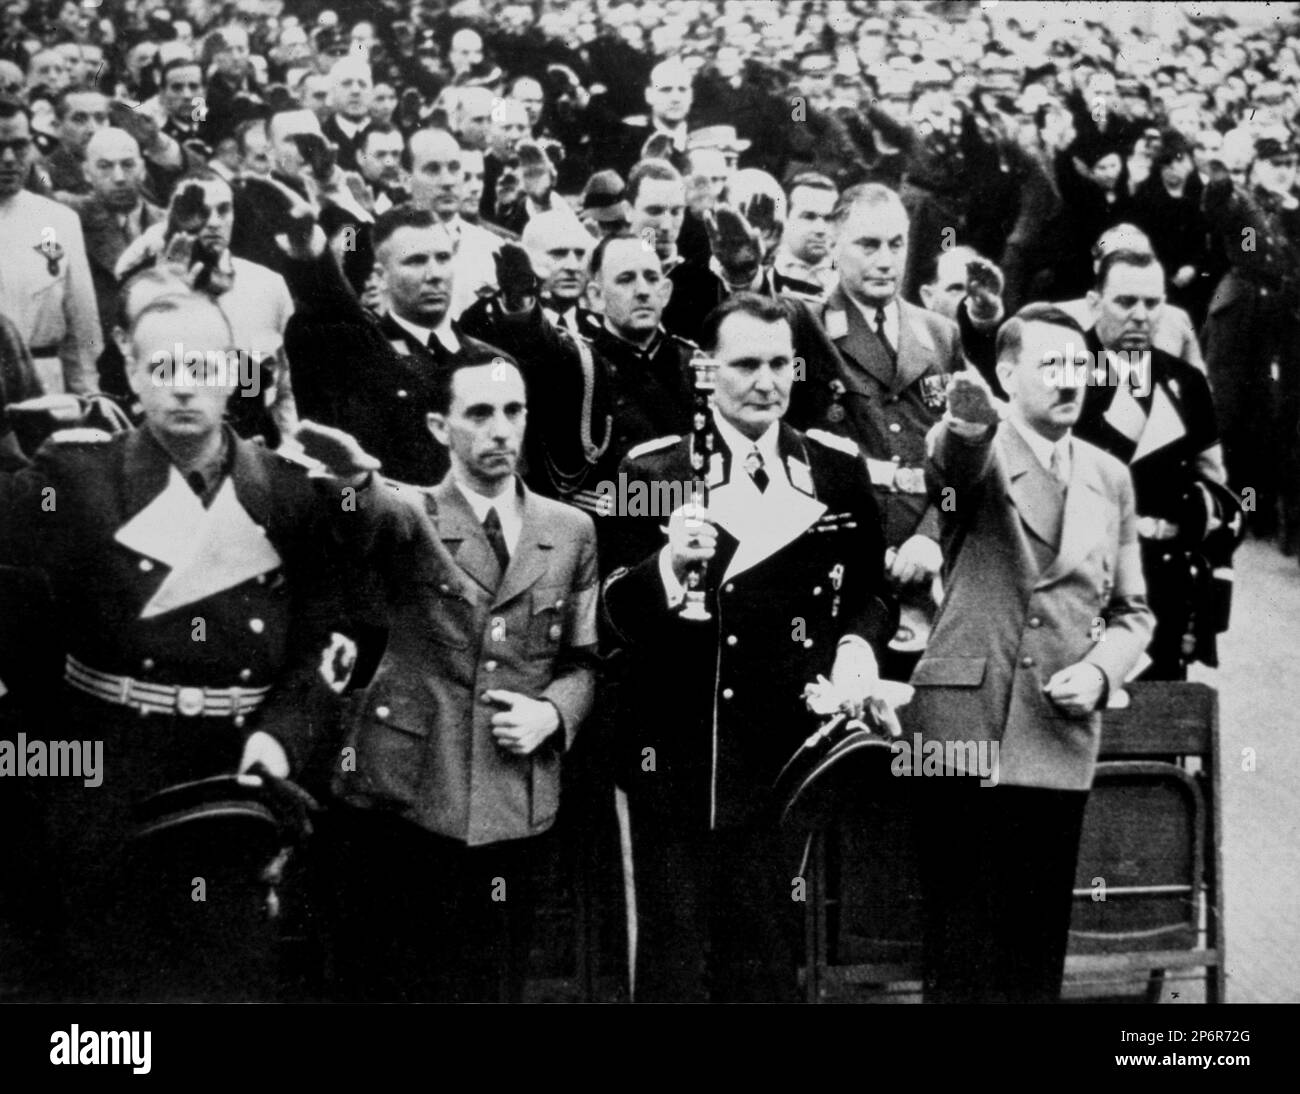 Années 1930, ALLEMAGNE : le dictateur allemand ADOLF HITLER ( 1889 - 1945 ) avec HERMANN GOERING ( 1893 - 1946 ), JOSEPH GOEBBELS ( 1897 - 1945 ) et JOACHIM VON RIBBENTROP ( 1893 - 1946 ). - Seconde Guerre mondiale - NAZI - NAZIST - SECONDA GUERRA MONDIALE - NAZISMO - NAZISTA - dittatore - bachigi - moustache - POLITICA - POLITHO - ritratto - portrait - svastica - cravatta - cravate - collier - coletto --- Archivio GBB Banque D'Images